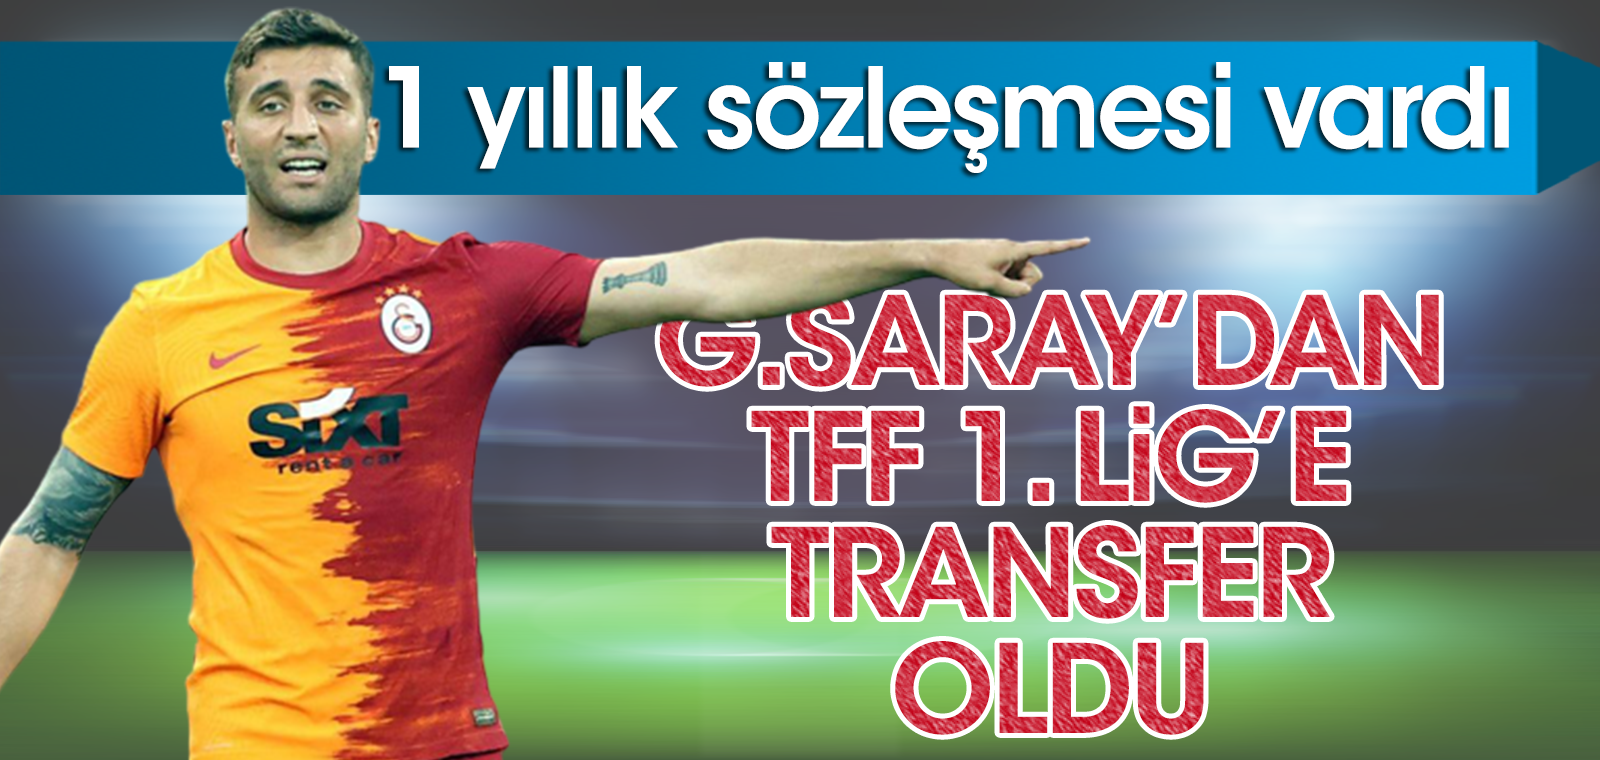 1 yıl daha sözleşmesi vardı ama Galatasaray'dan ayrıldı